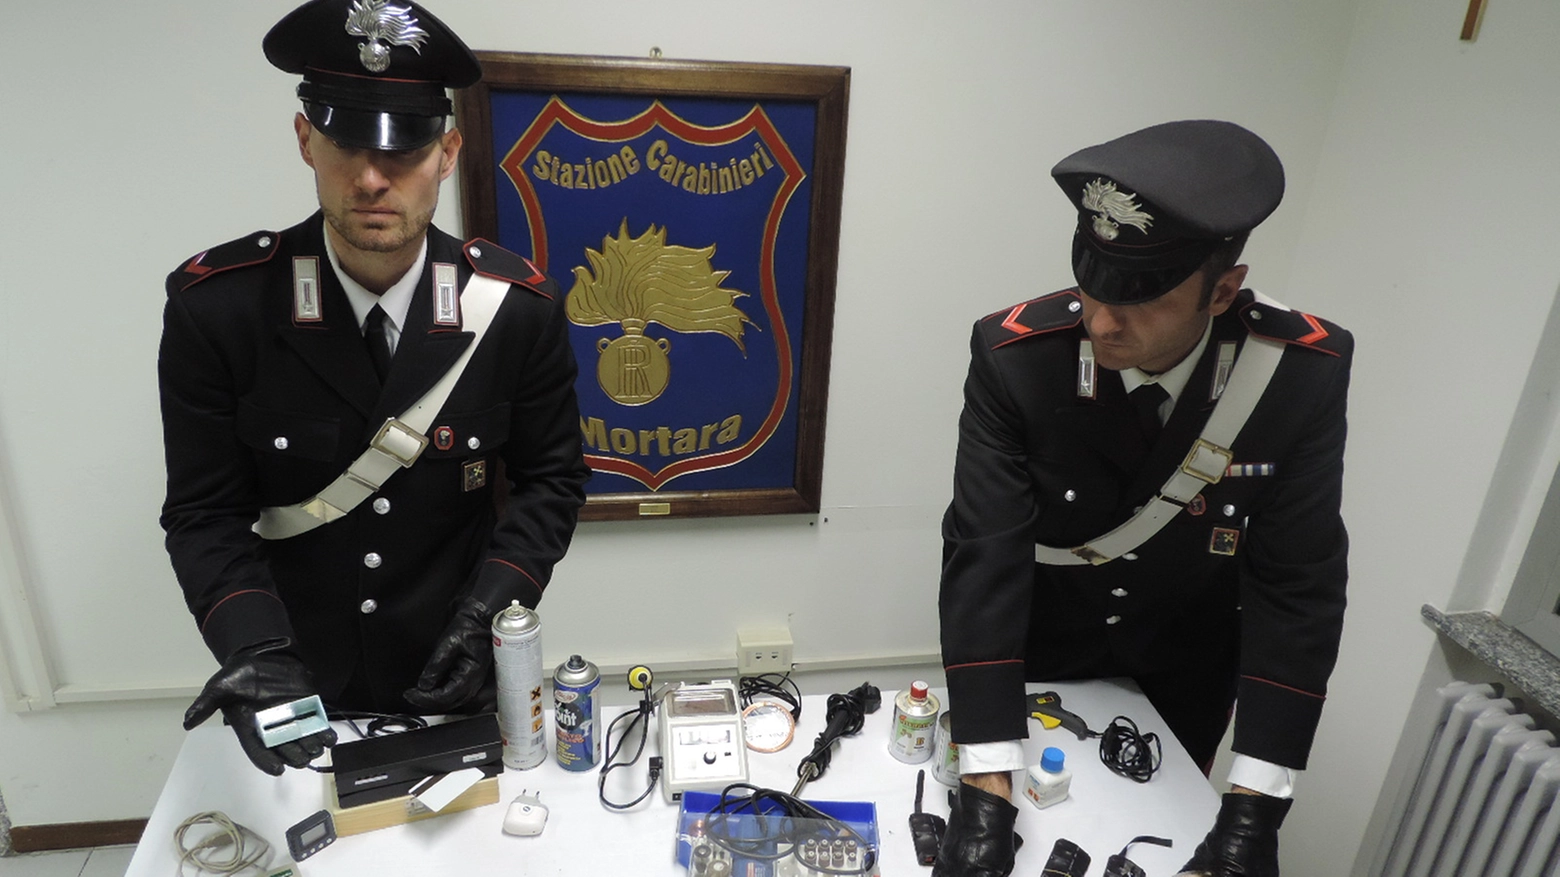 Materiale sequestrato dai carabinieri